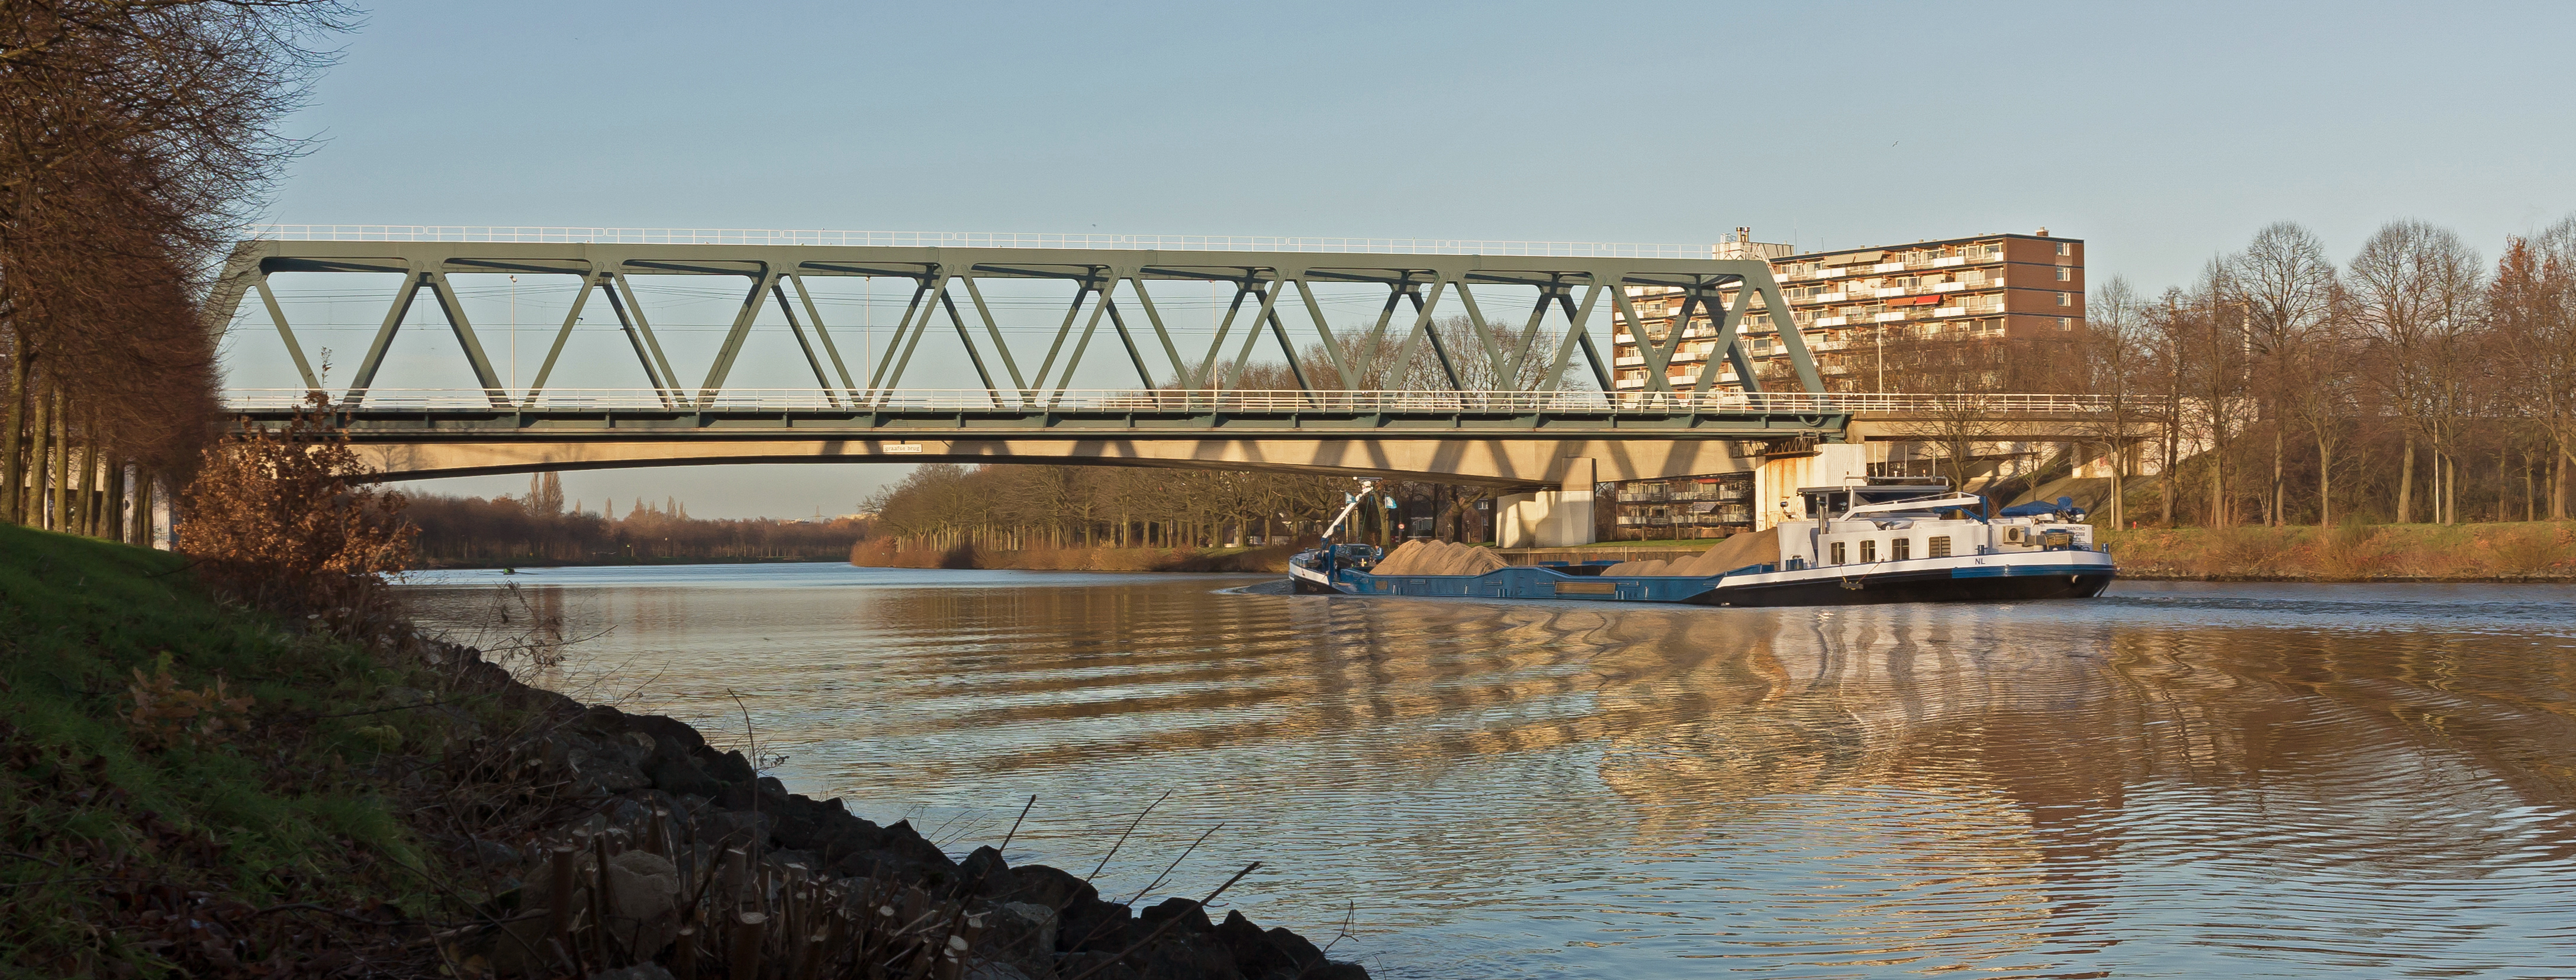 Nijmegen, spoorbrug over het Maas-Waalkanaal foto6 2015-12-09 15.13